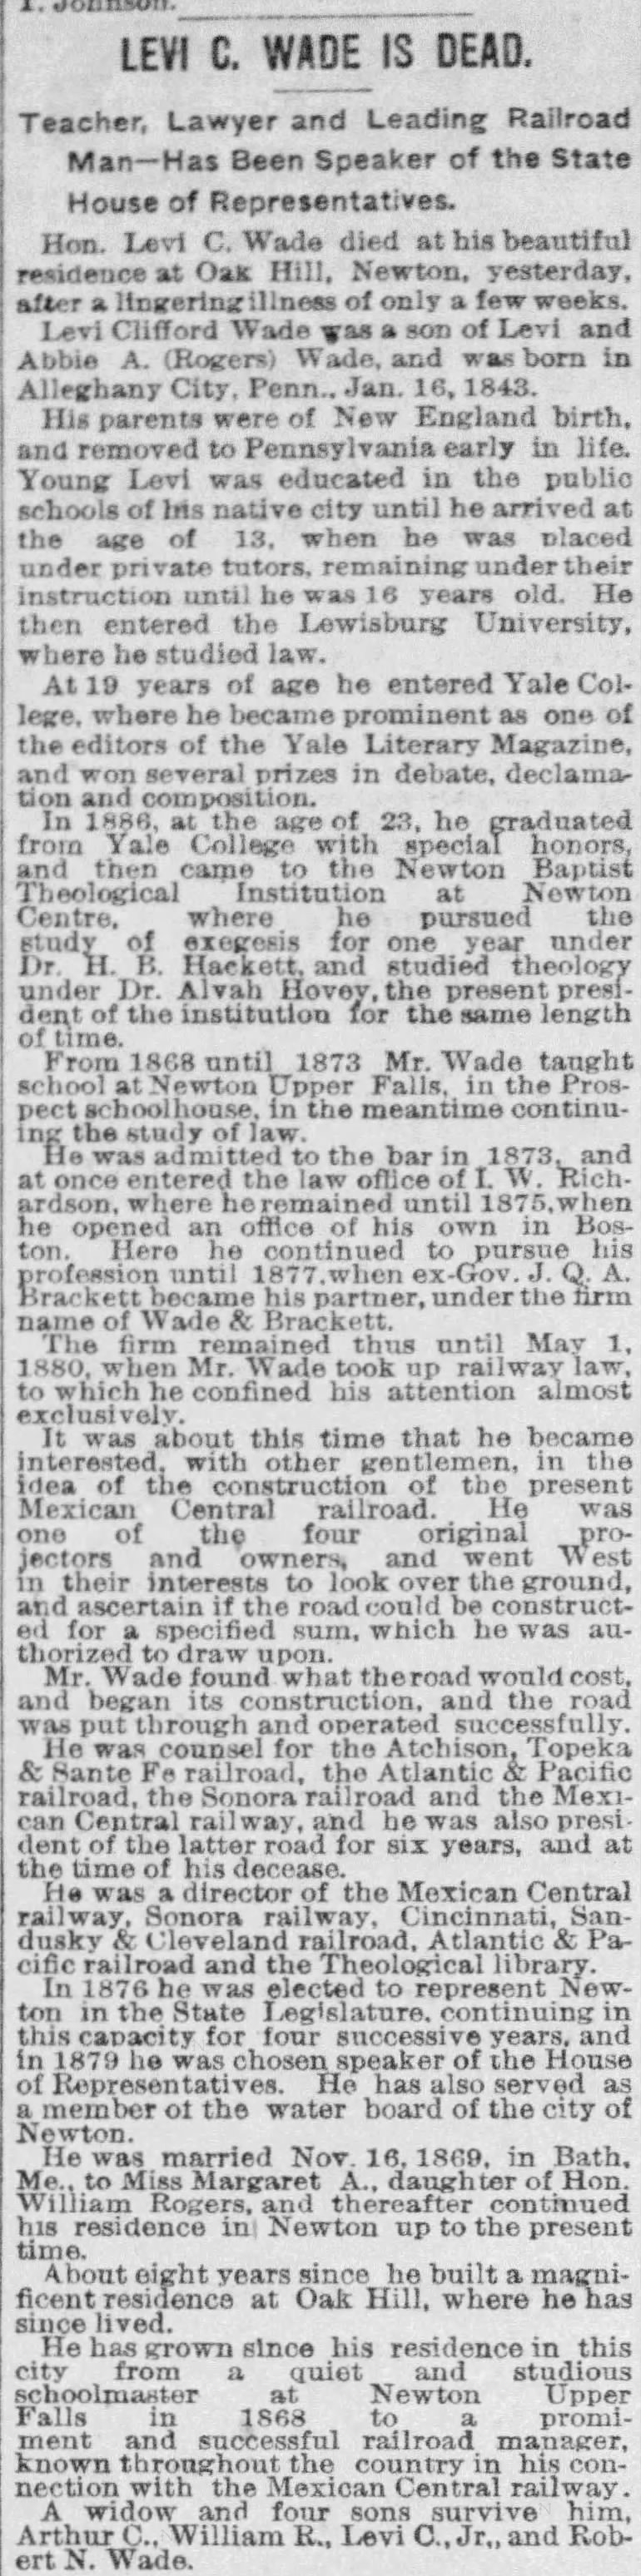 Levi C. Wade is dead; 22 Mar 1891; The Boston Globe